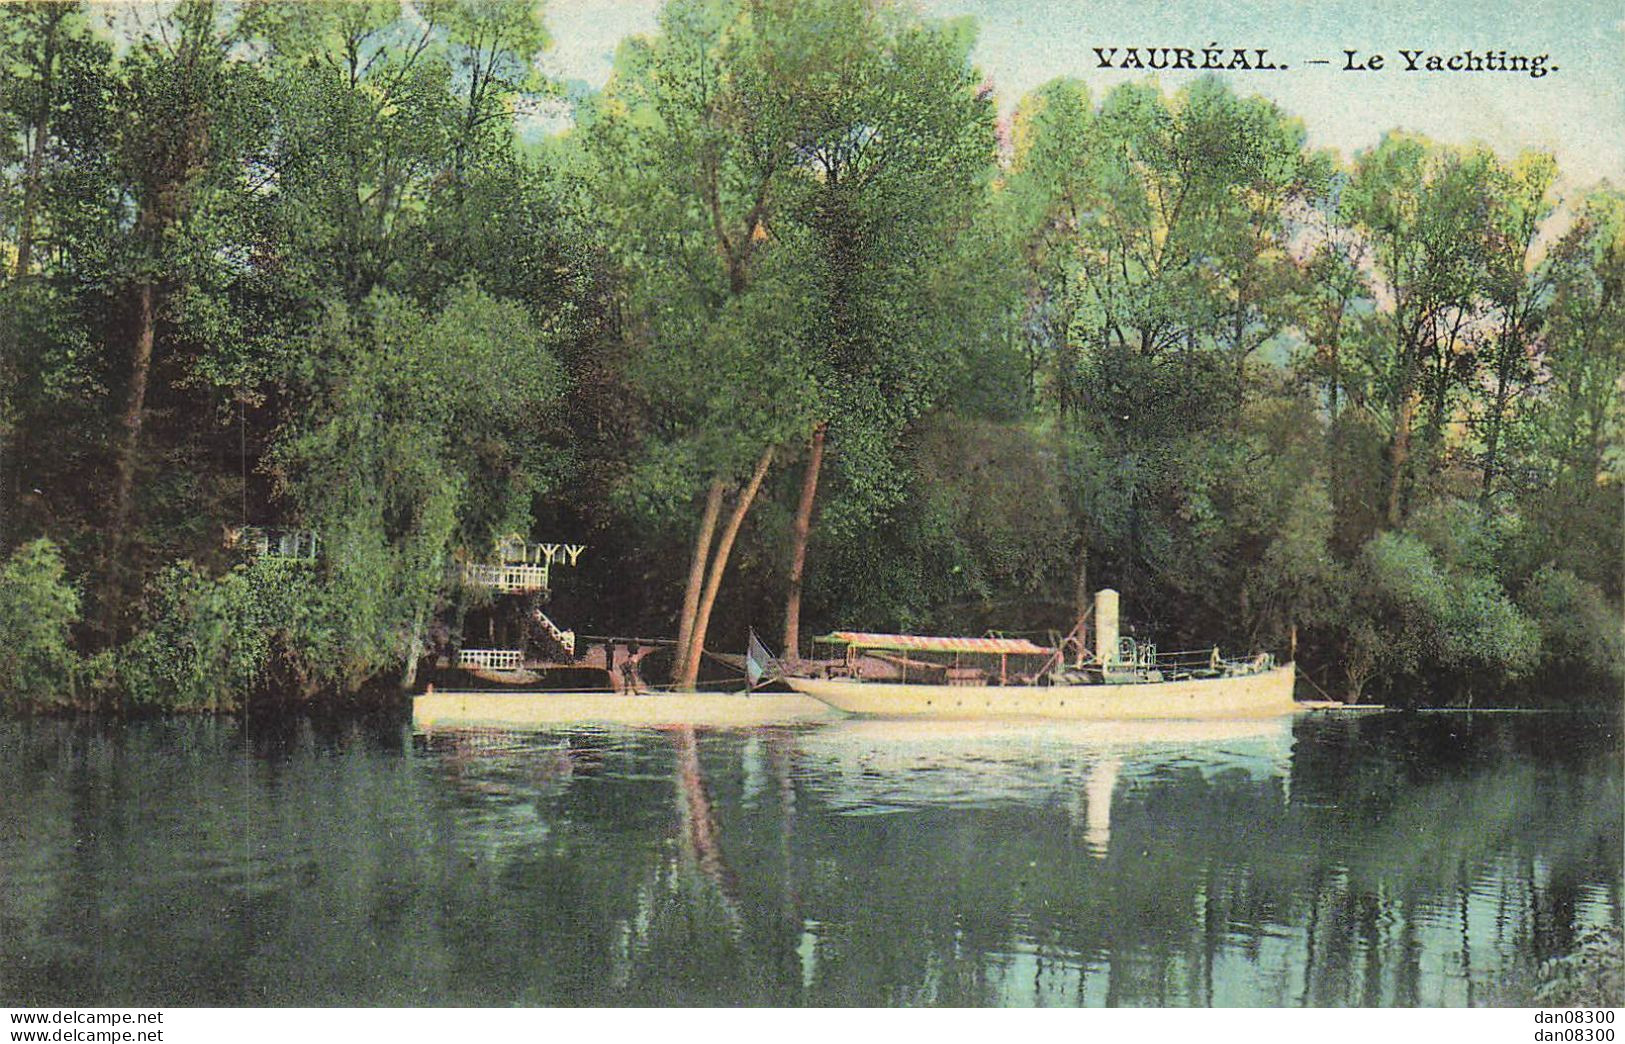 95 VAUREAL LE YACHTING - Vauréal